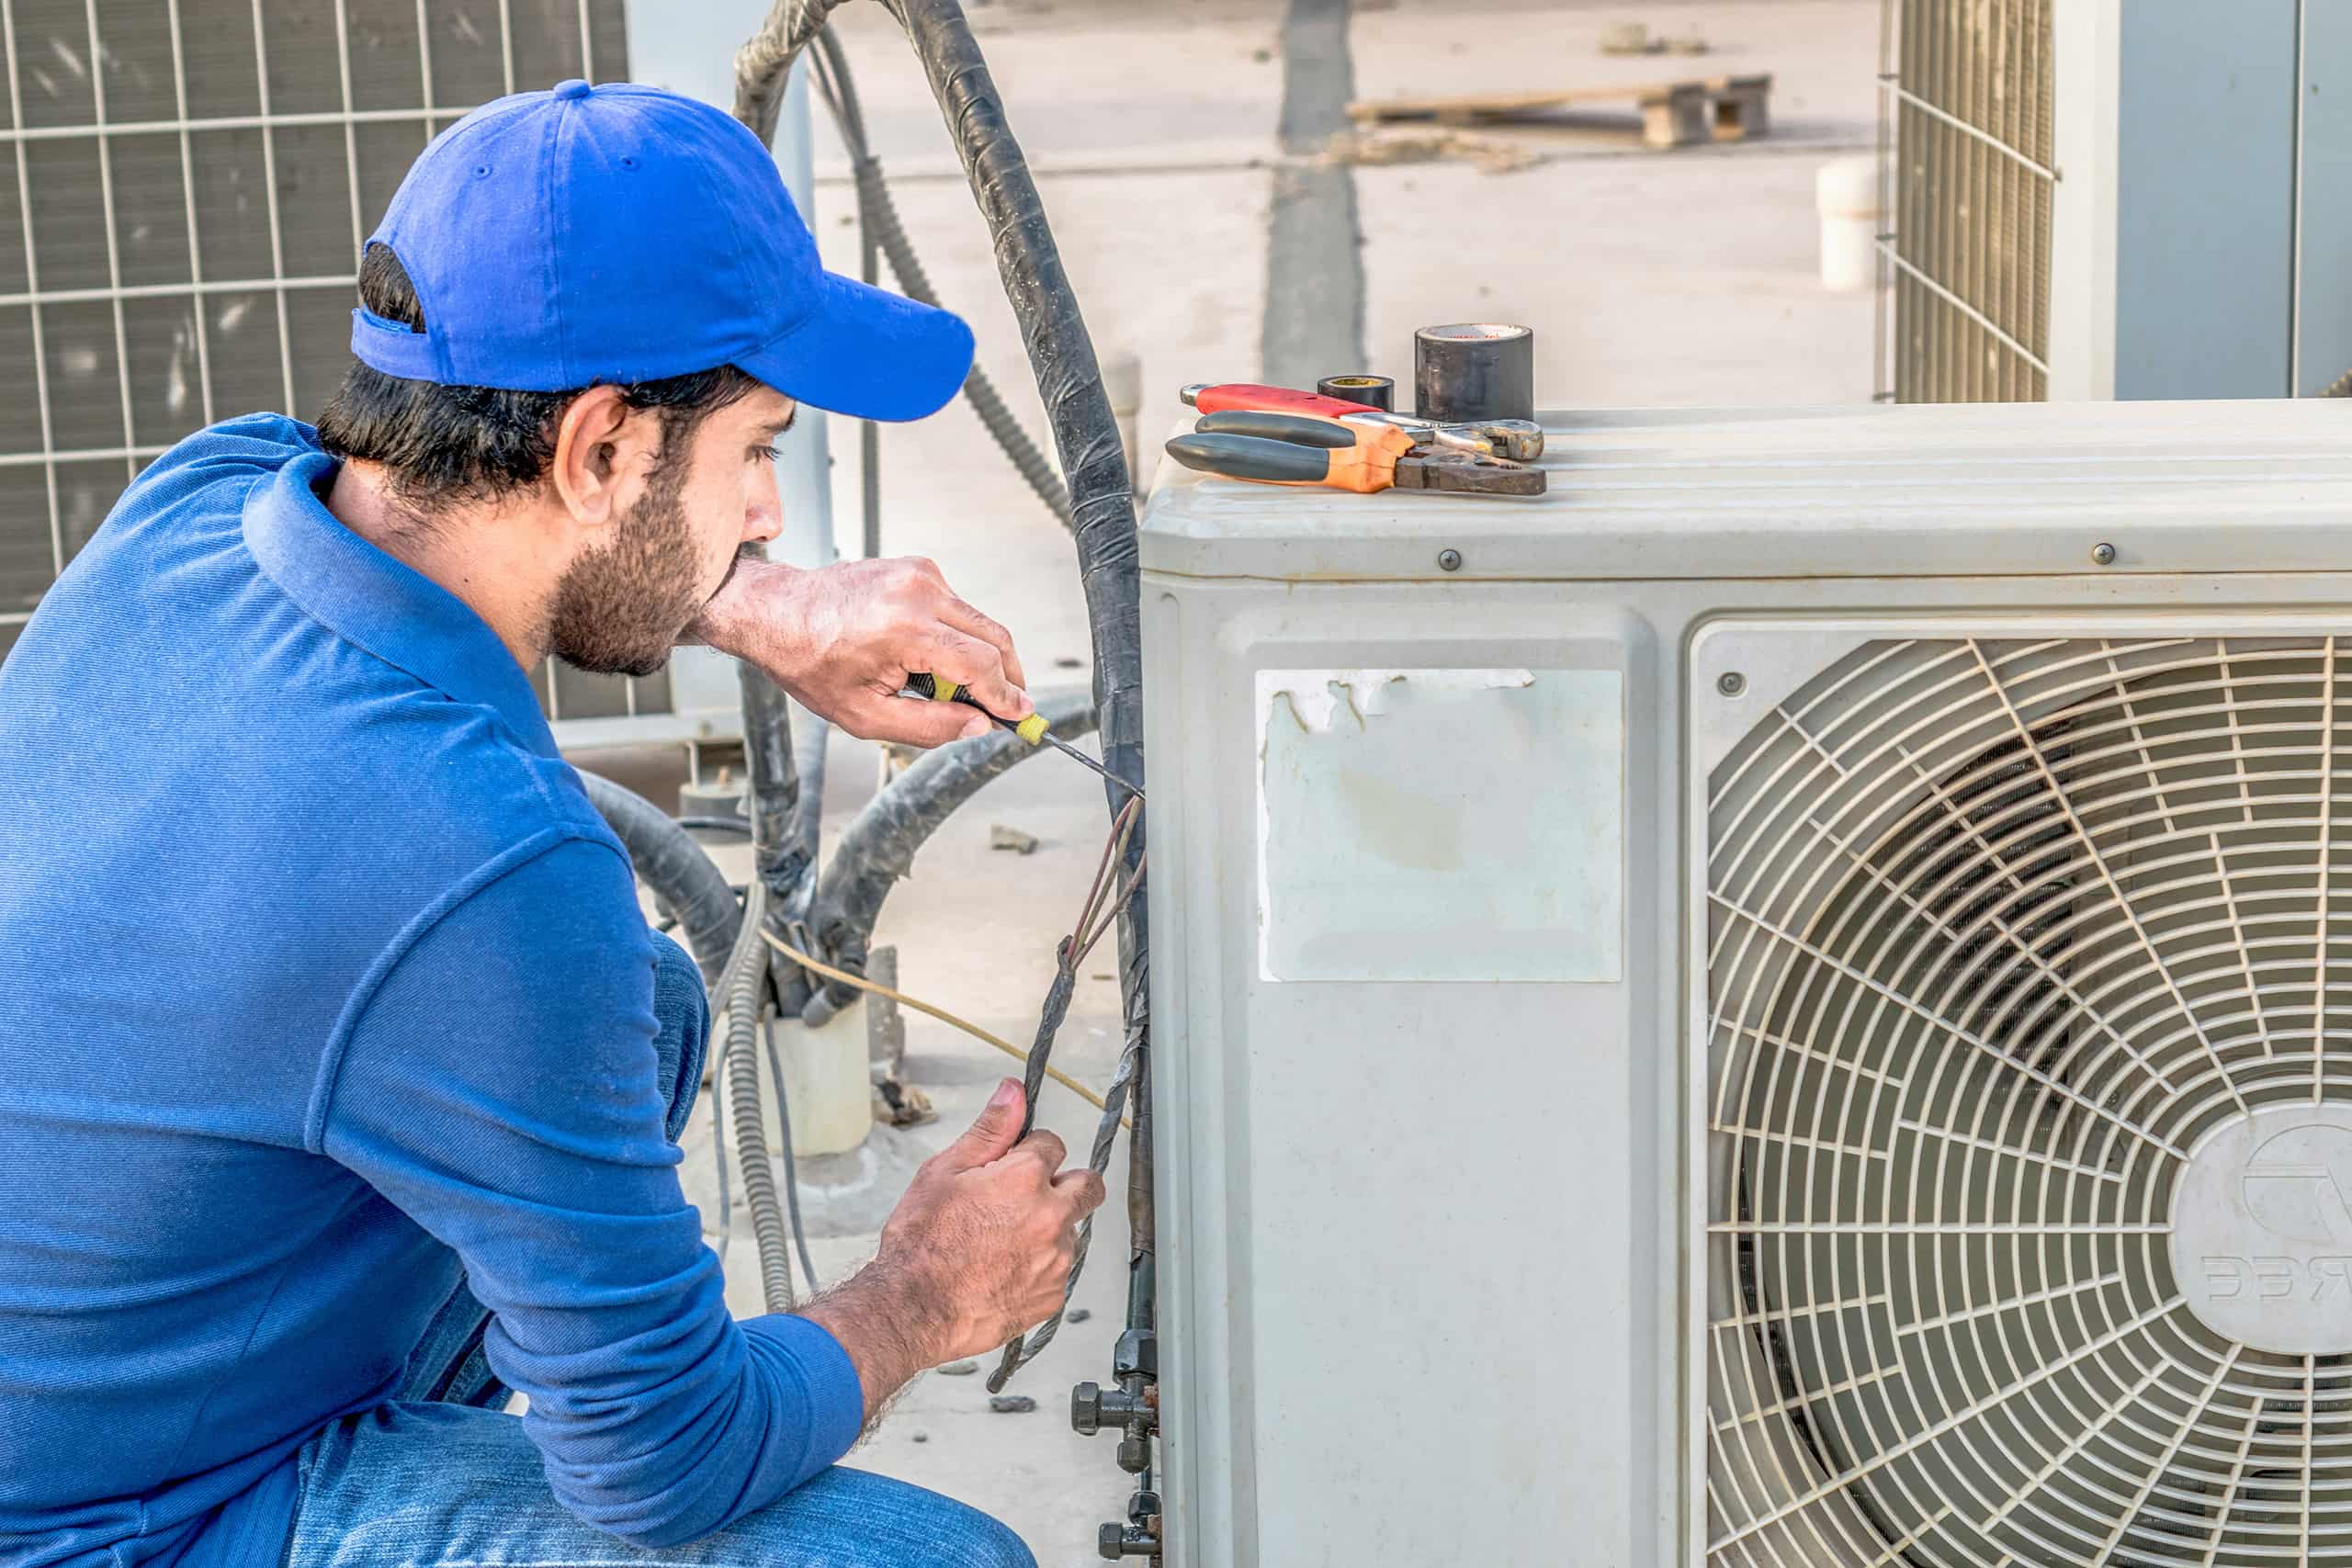 A man repairing an air conditioning unit